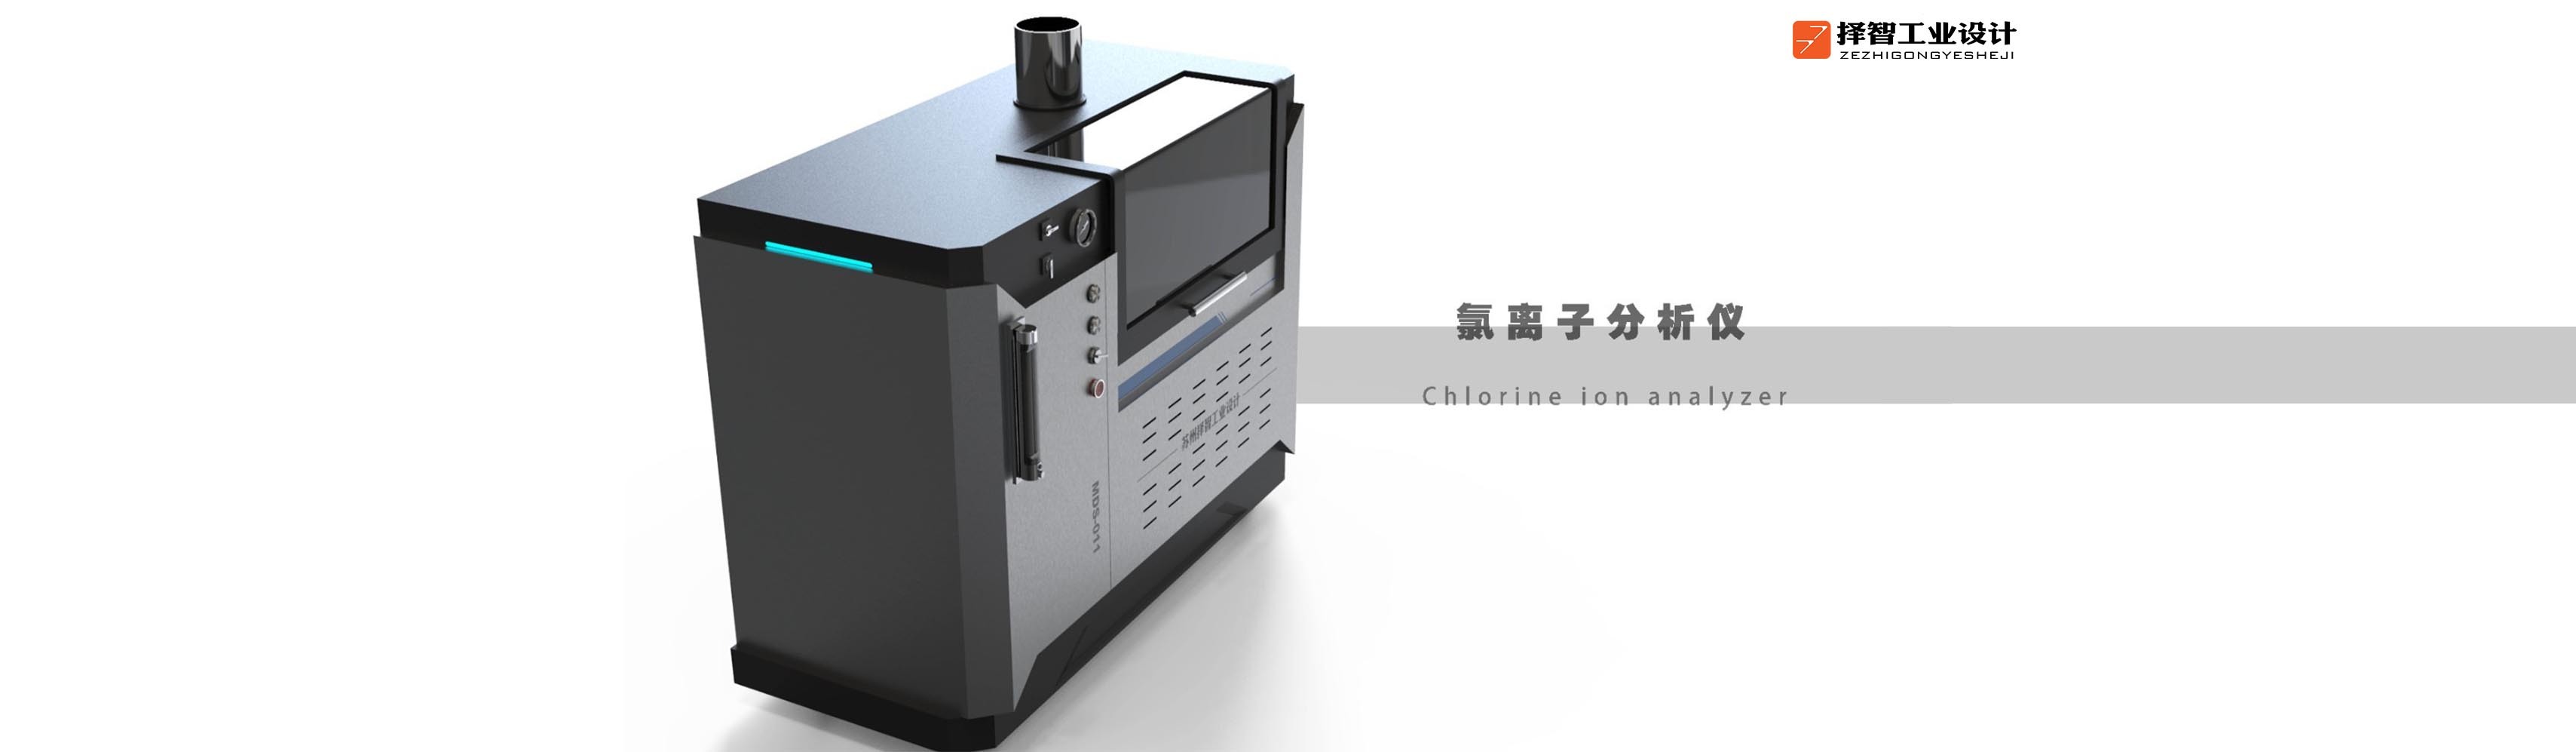 上海工业产品设计产品外观设计智能外观设计氯离子分析仪外观设计